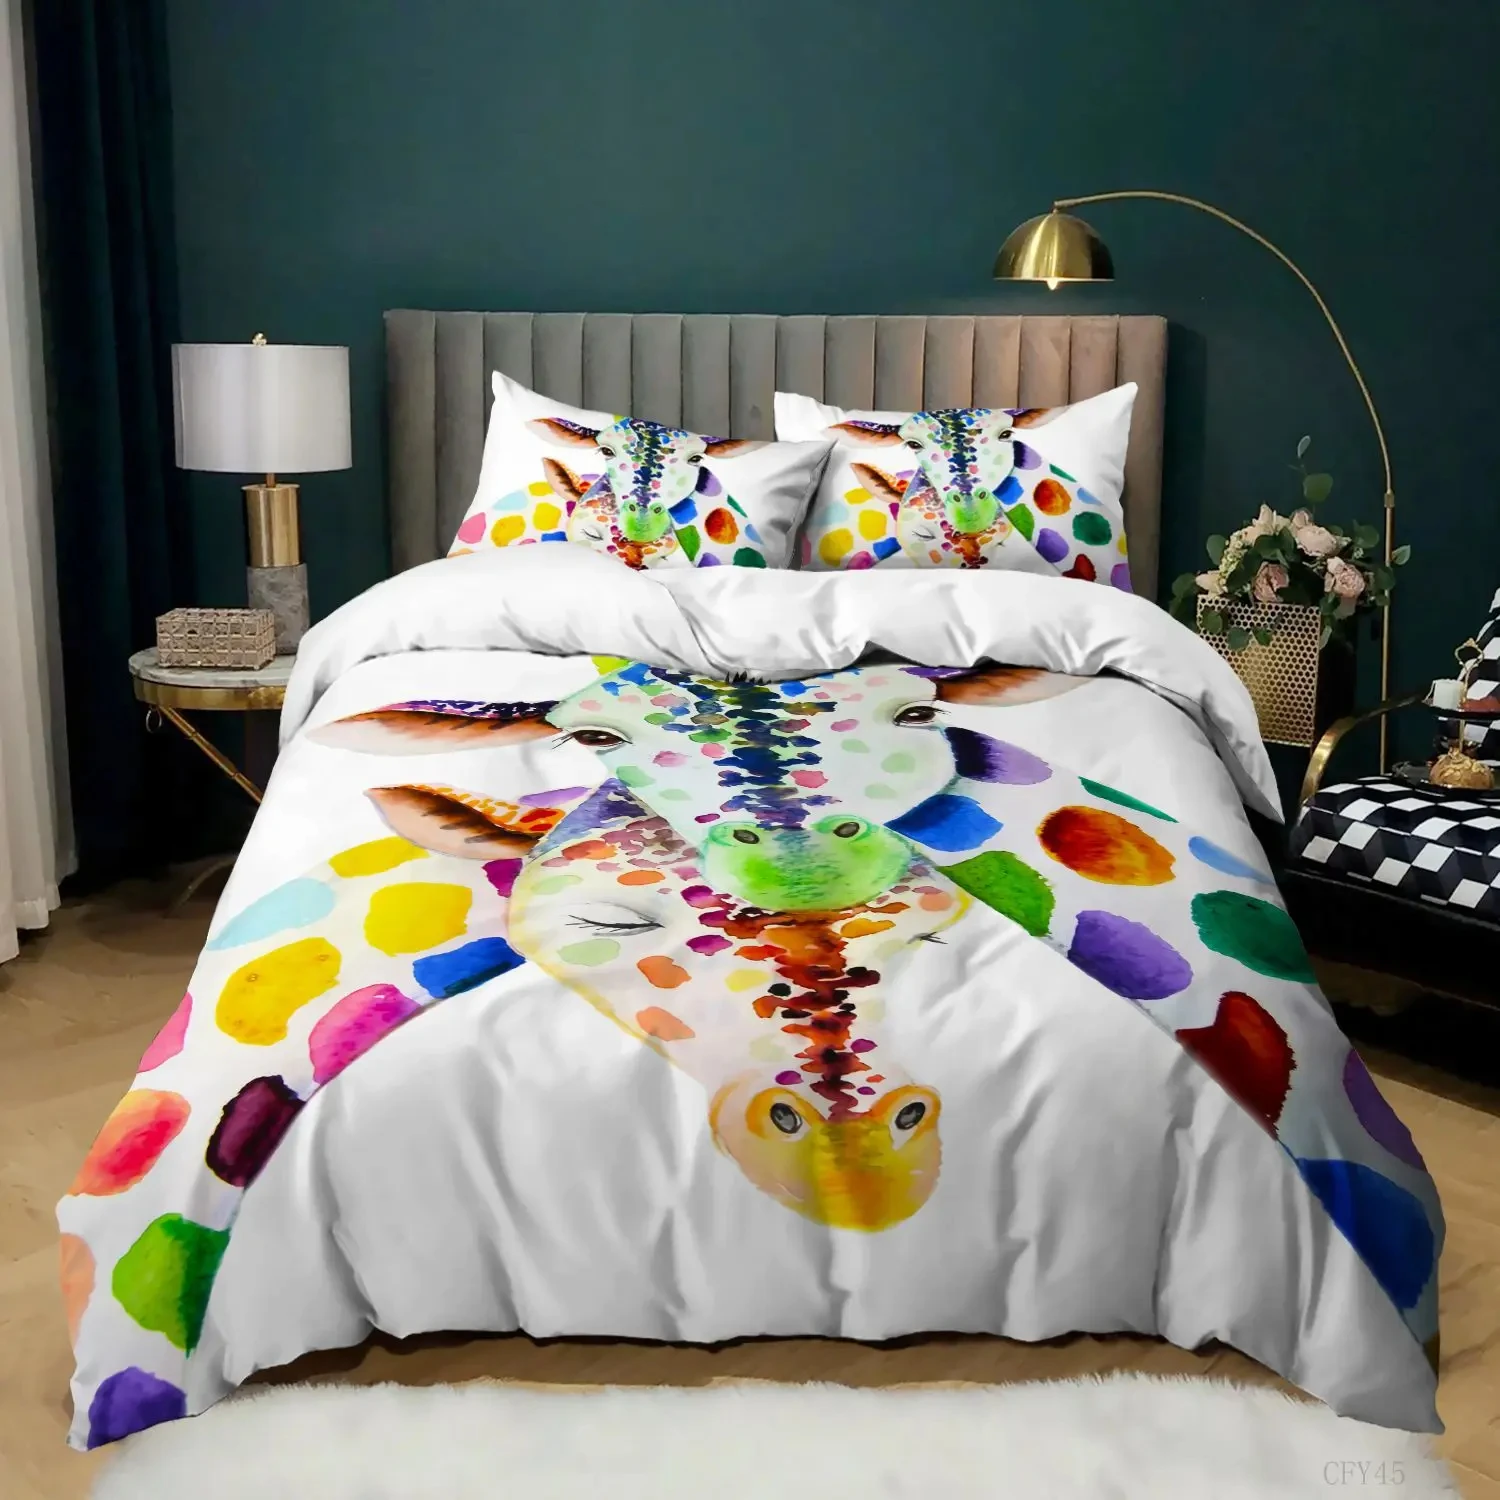 Pembe Beyaz Nevresim Zürafa Yatak Kraliçe / Kral / Tam Boy Hayvanat Bahçesi Hayvanları yatak takımı 3 Adet Renkli Zürafa Yatak Yorgan Kapağı